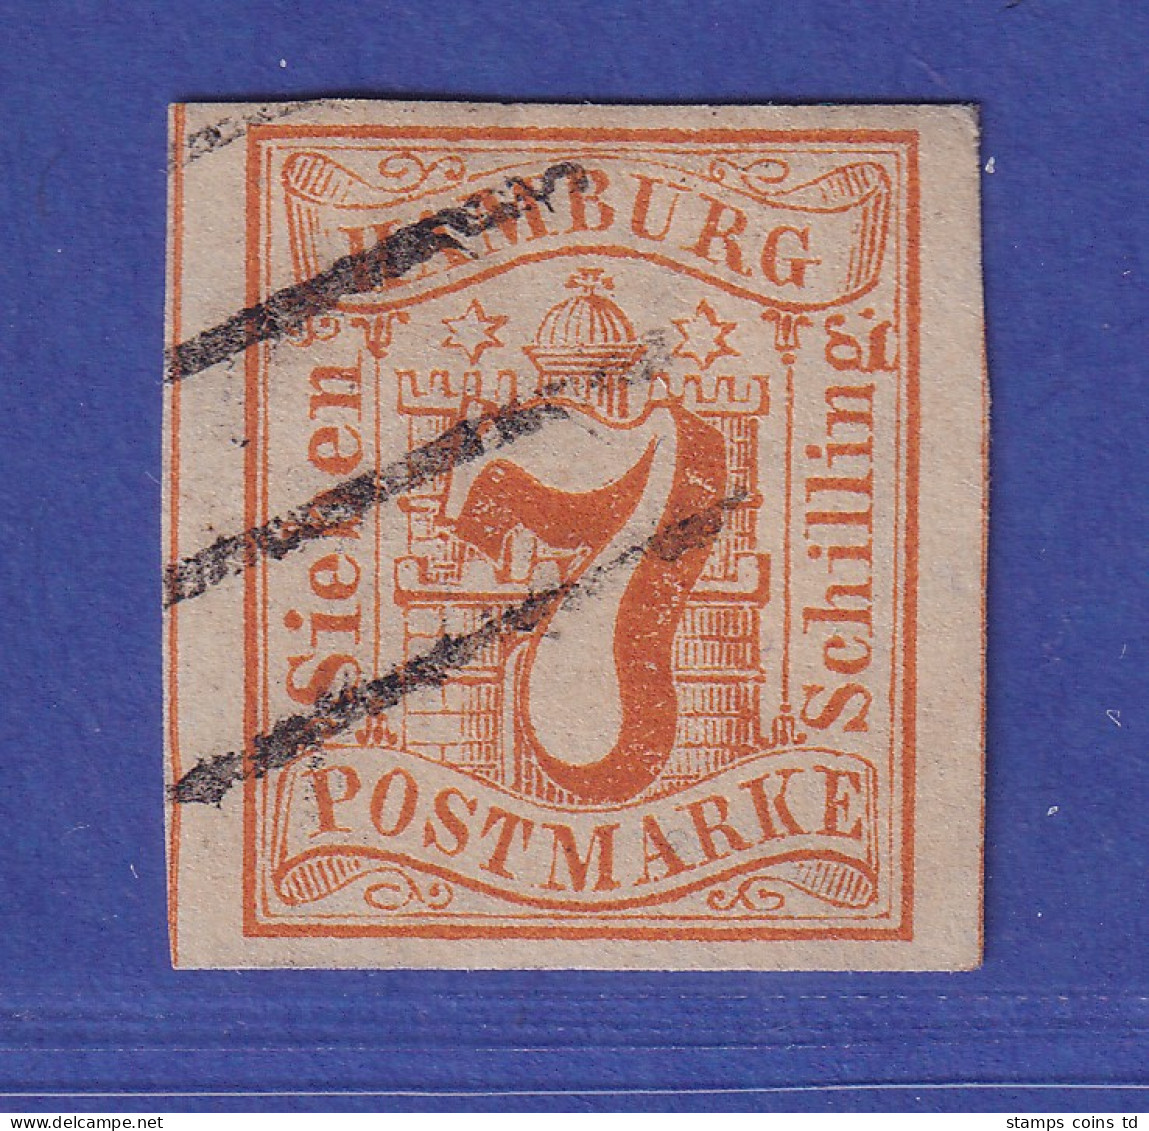 Hamburg 1859 Wertziffer 7 Schillinge Orange Mi.-Nr. 6 Gestempelt Gpr. PFENNINGER - Hamburg (Amburgo)